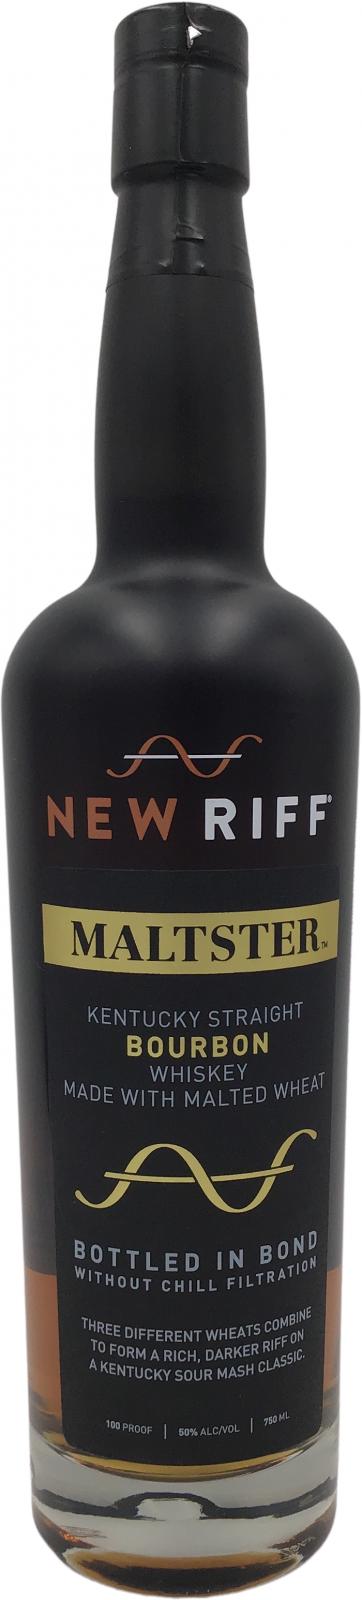 New Riff 2015 Maltster 50% 750ml